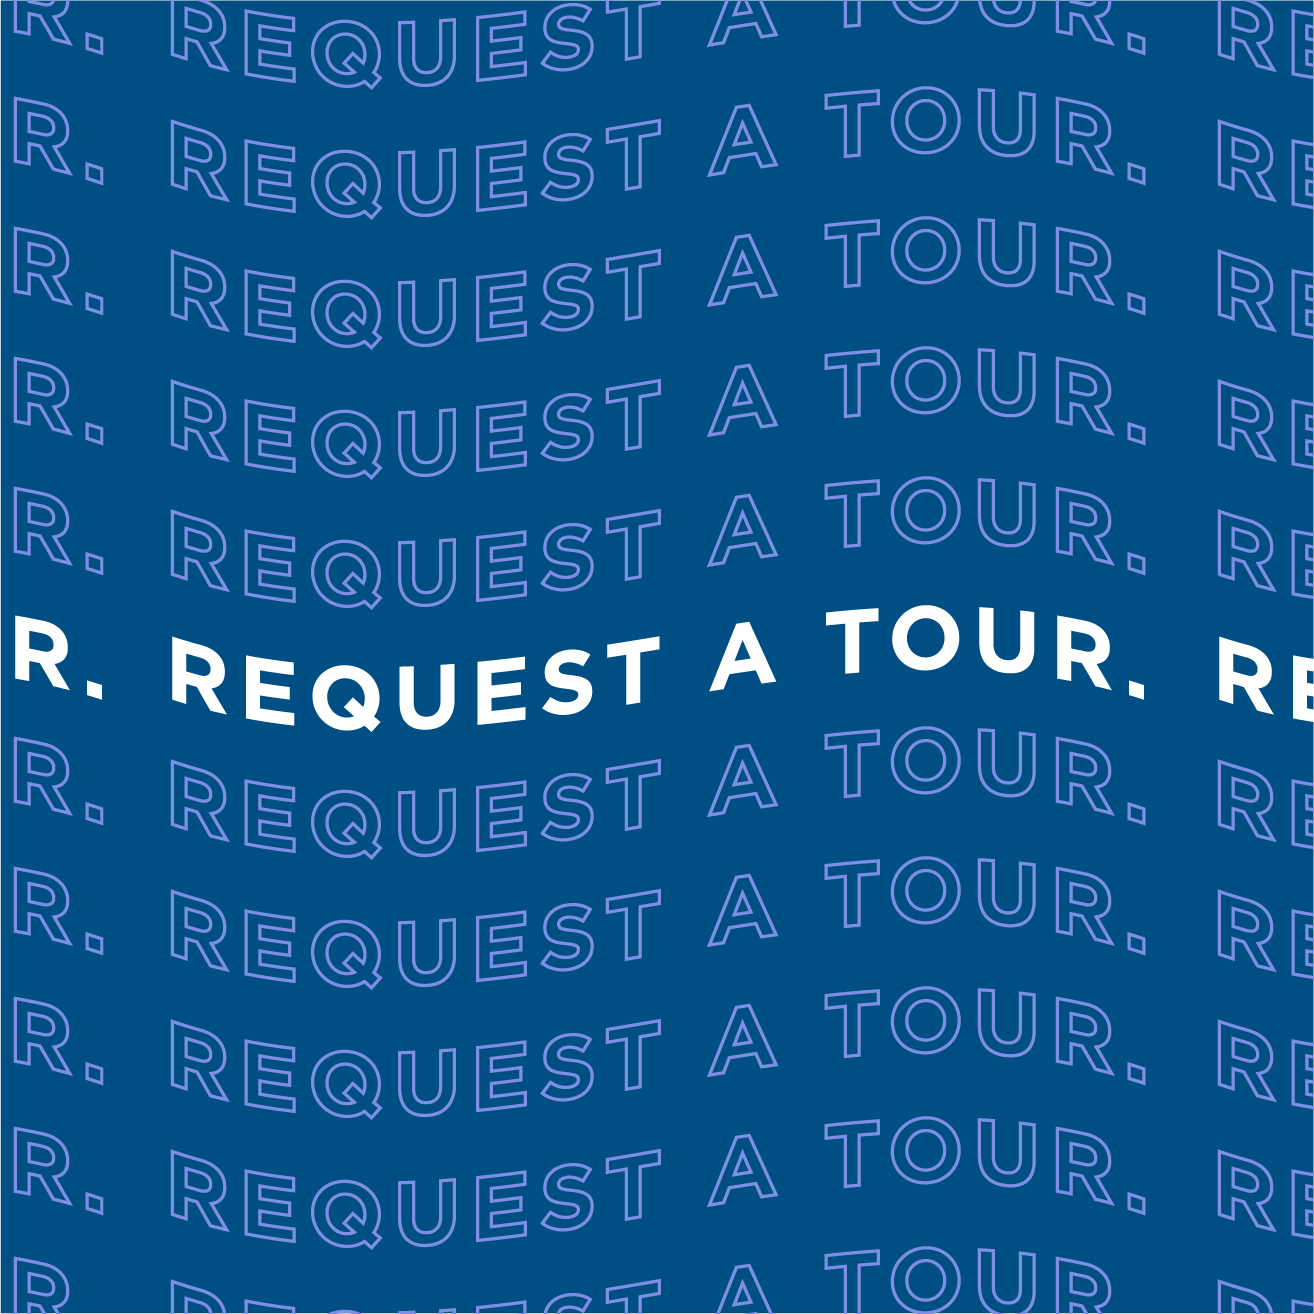 Request a Tour